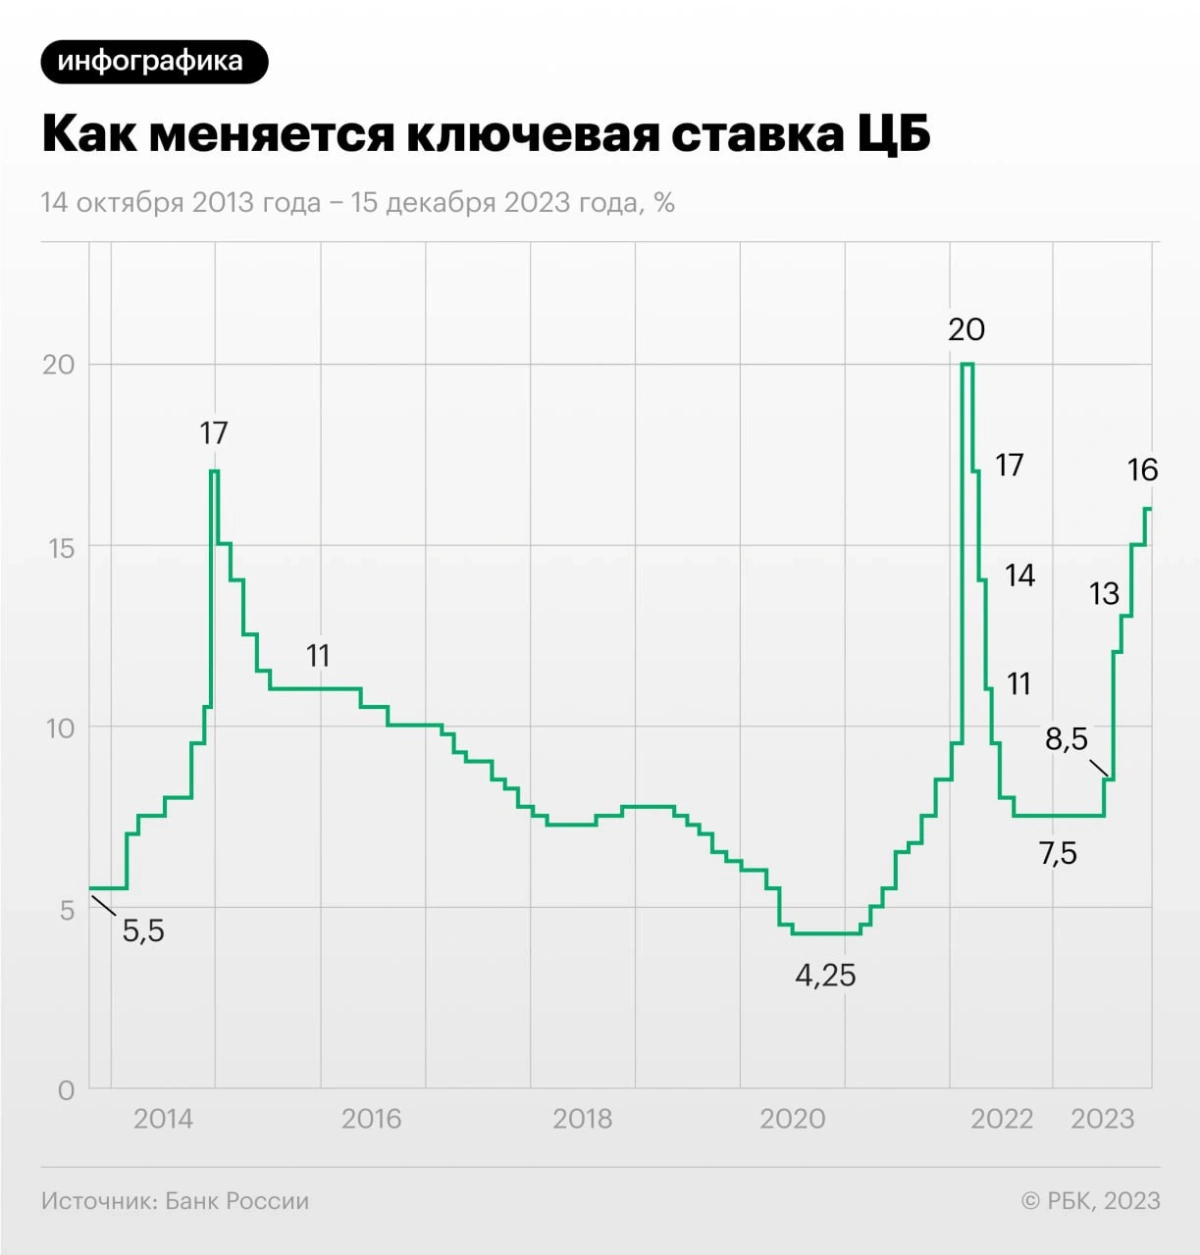 <p>Изменение ключевой ставки Центробанка России 14 октября 2013 года&nbsp;&mdash; 15 декабря 2023 года</p>